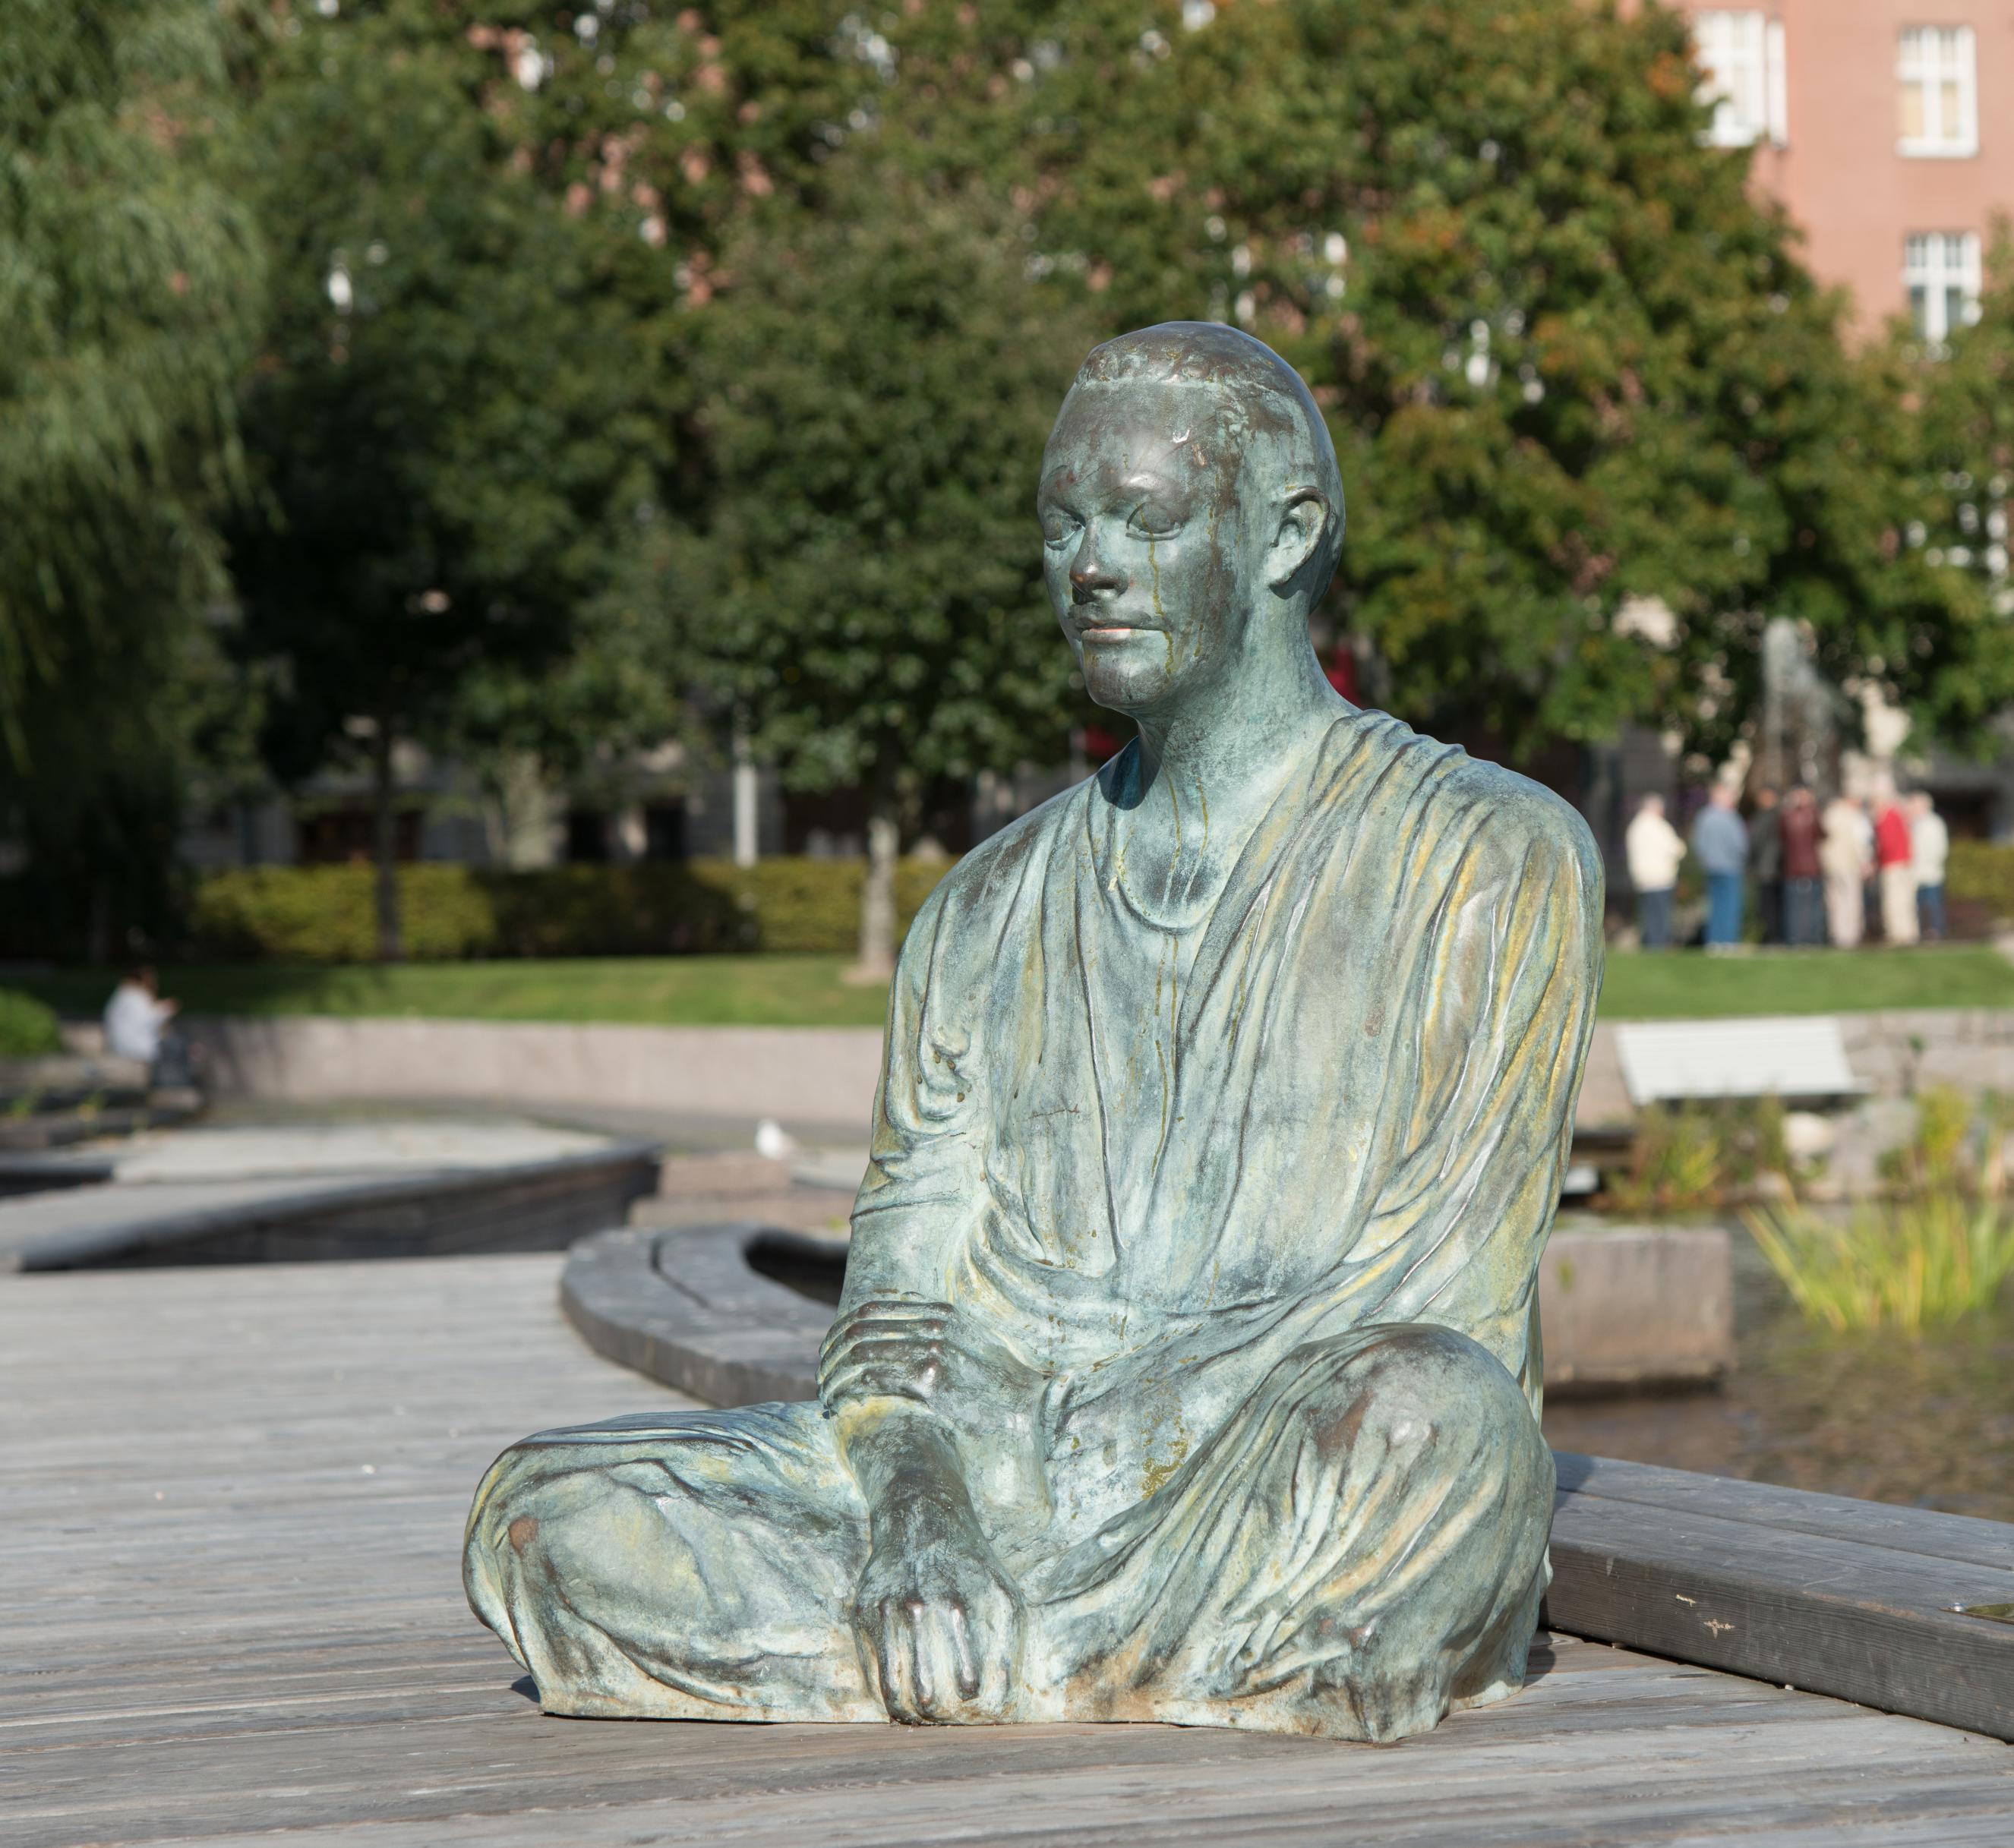 Bronsskulptur föreställande en man sitter i skräddarställning på soldäcket intill Svartån.